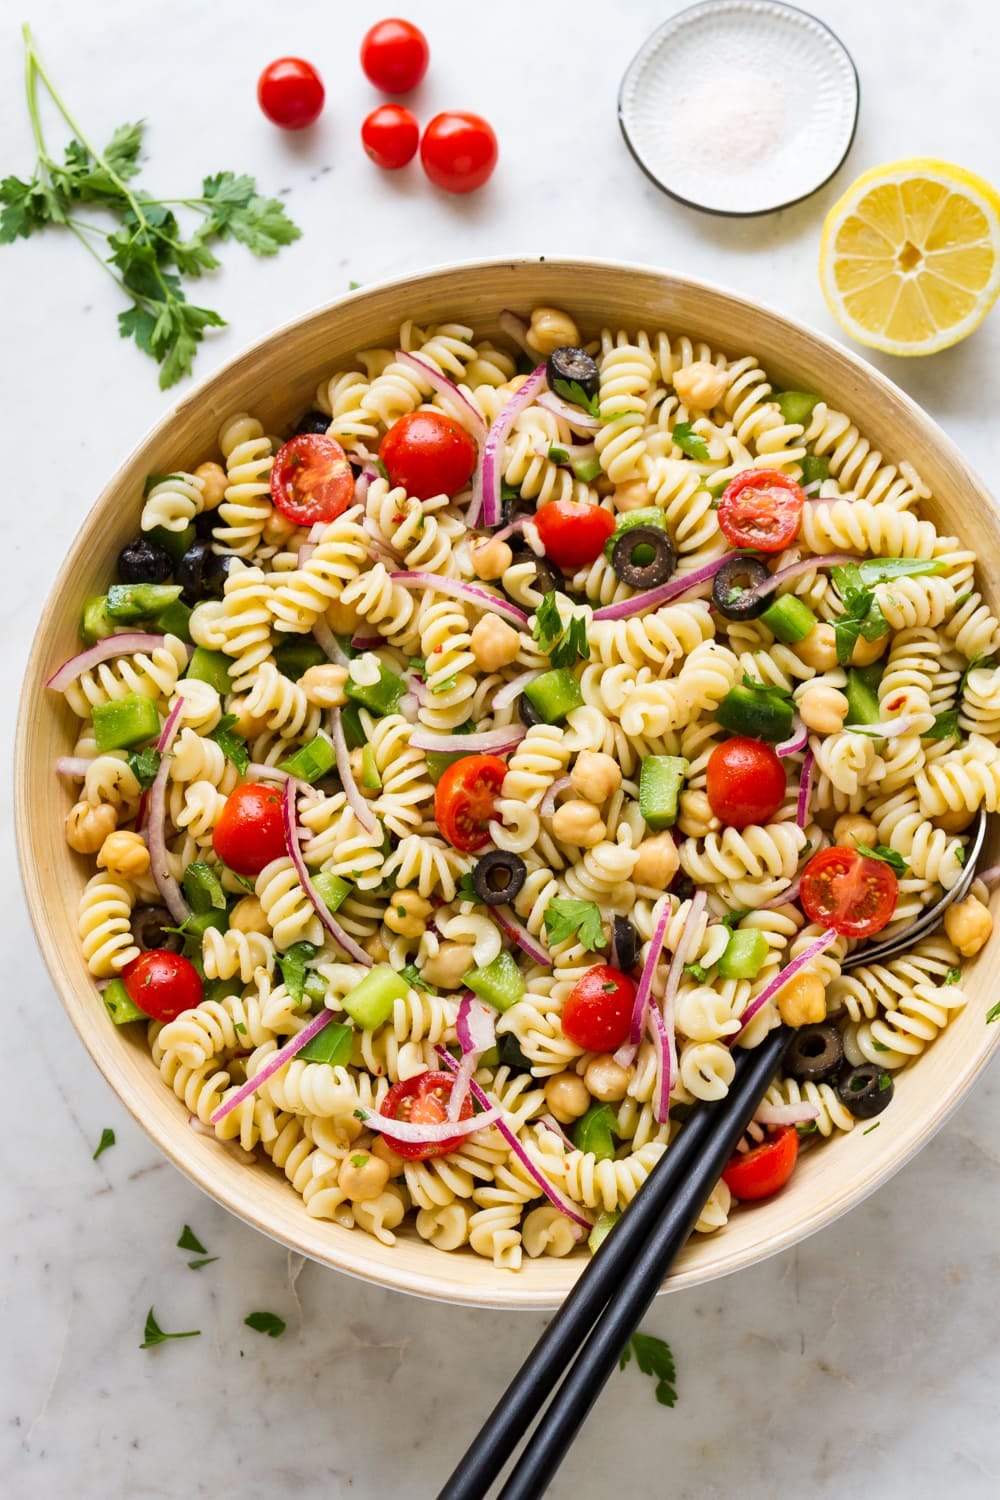 https://simple-veganista.com/wp-content/uploads/2019/05/easy-vegan-pasta-salad-recipe-2.jpg